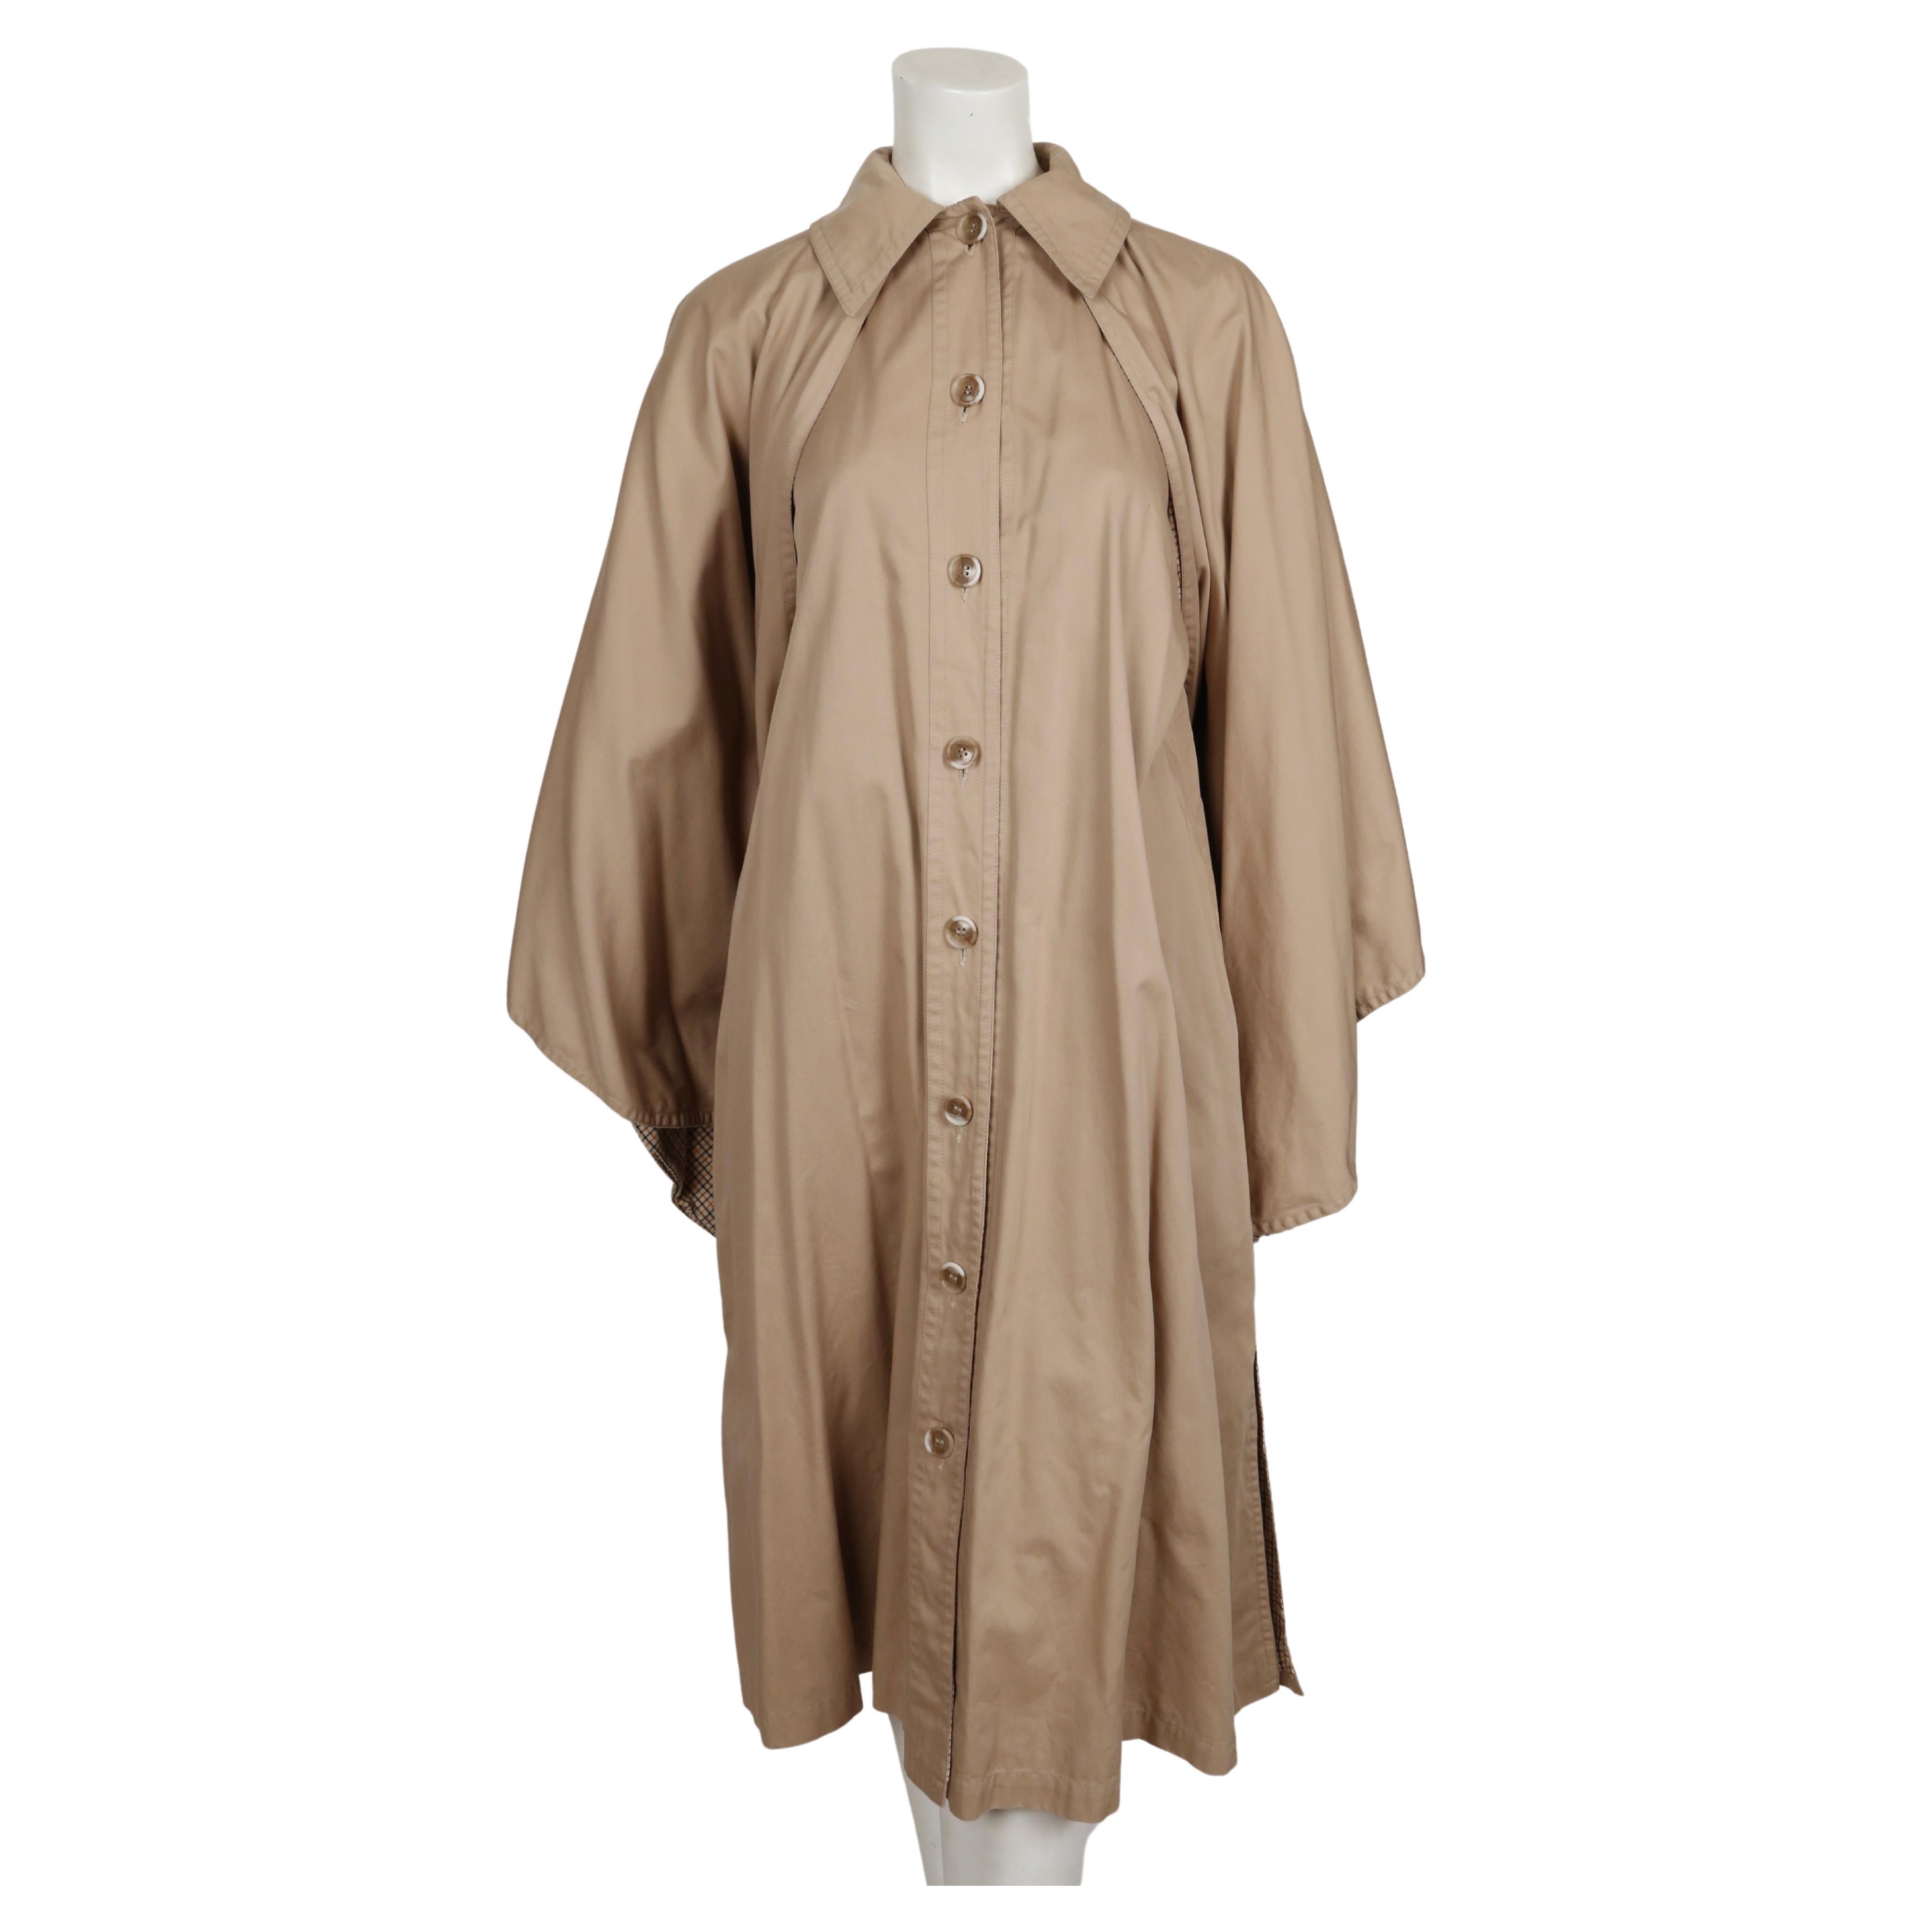 Trench-coat à cape en popeline de coton de couleur bronze, conçu par Yves Saint Laurent au début des années 1970. Aucune taille n'est indiquée, mais ce modèle convient à de nombreuses tailles grâce à sa coupe ample. Mesures approximatives :  buste